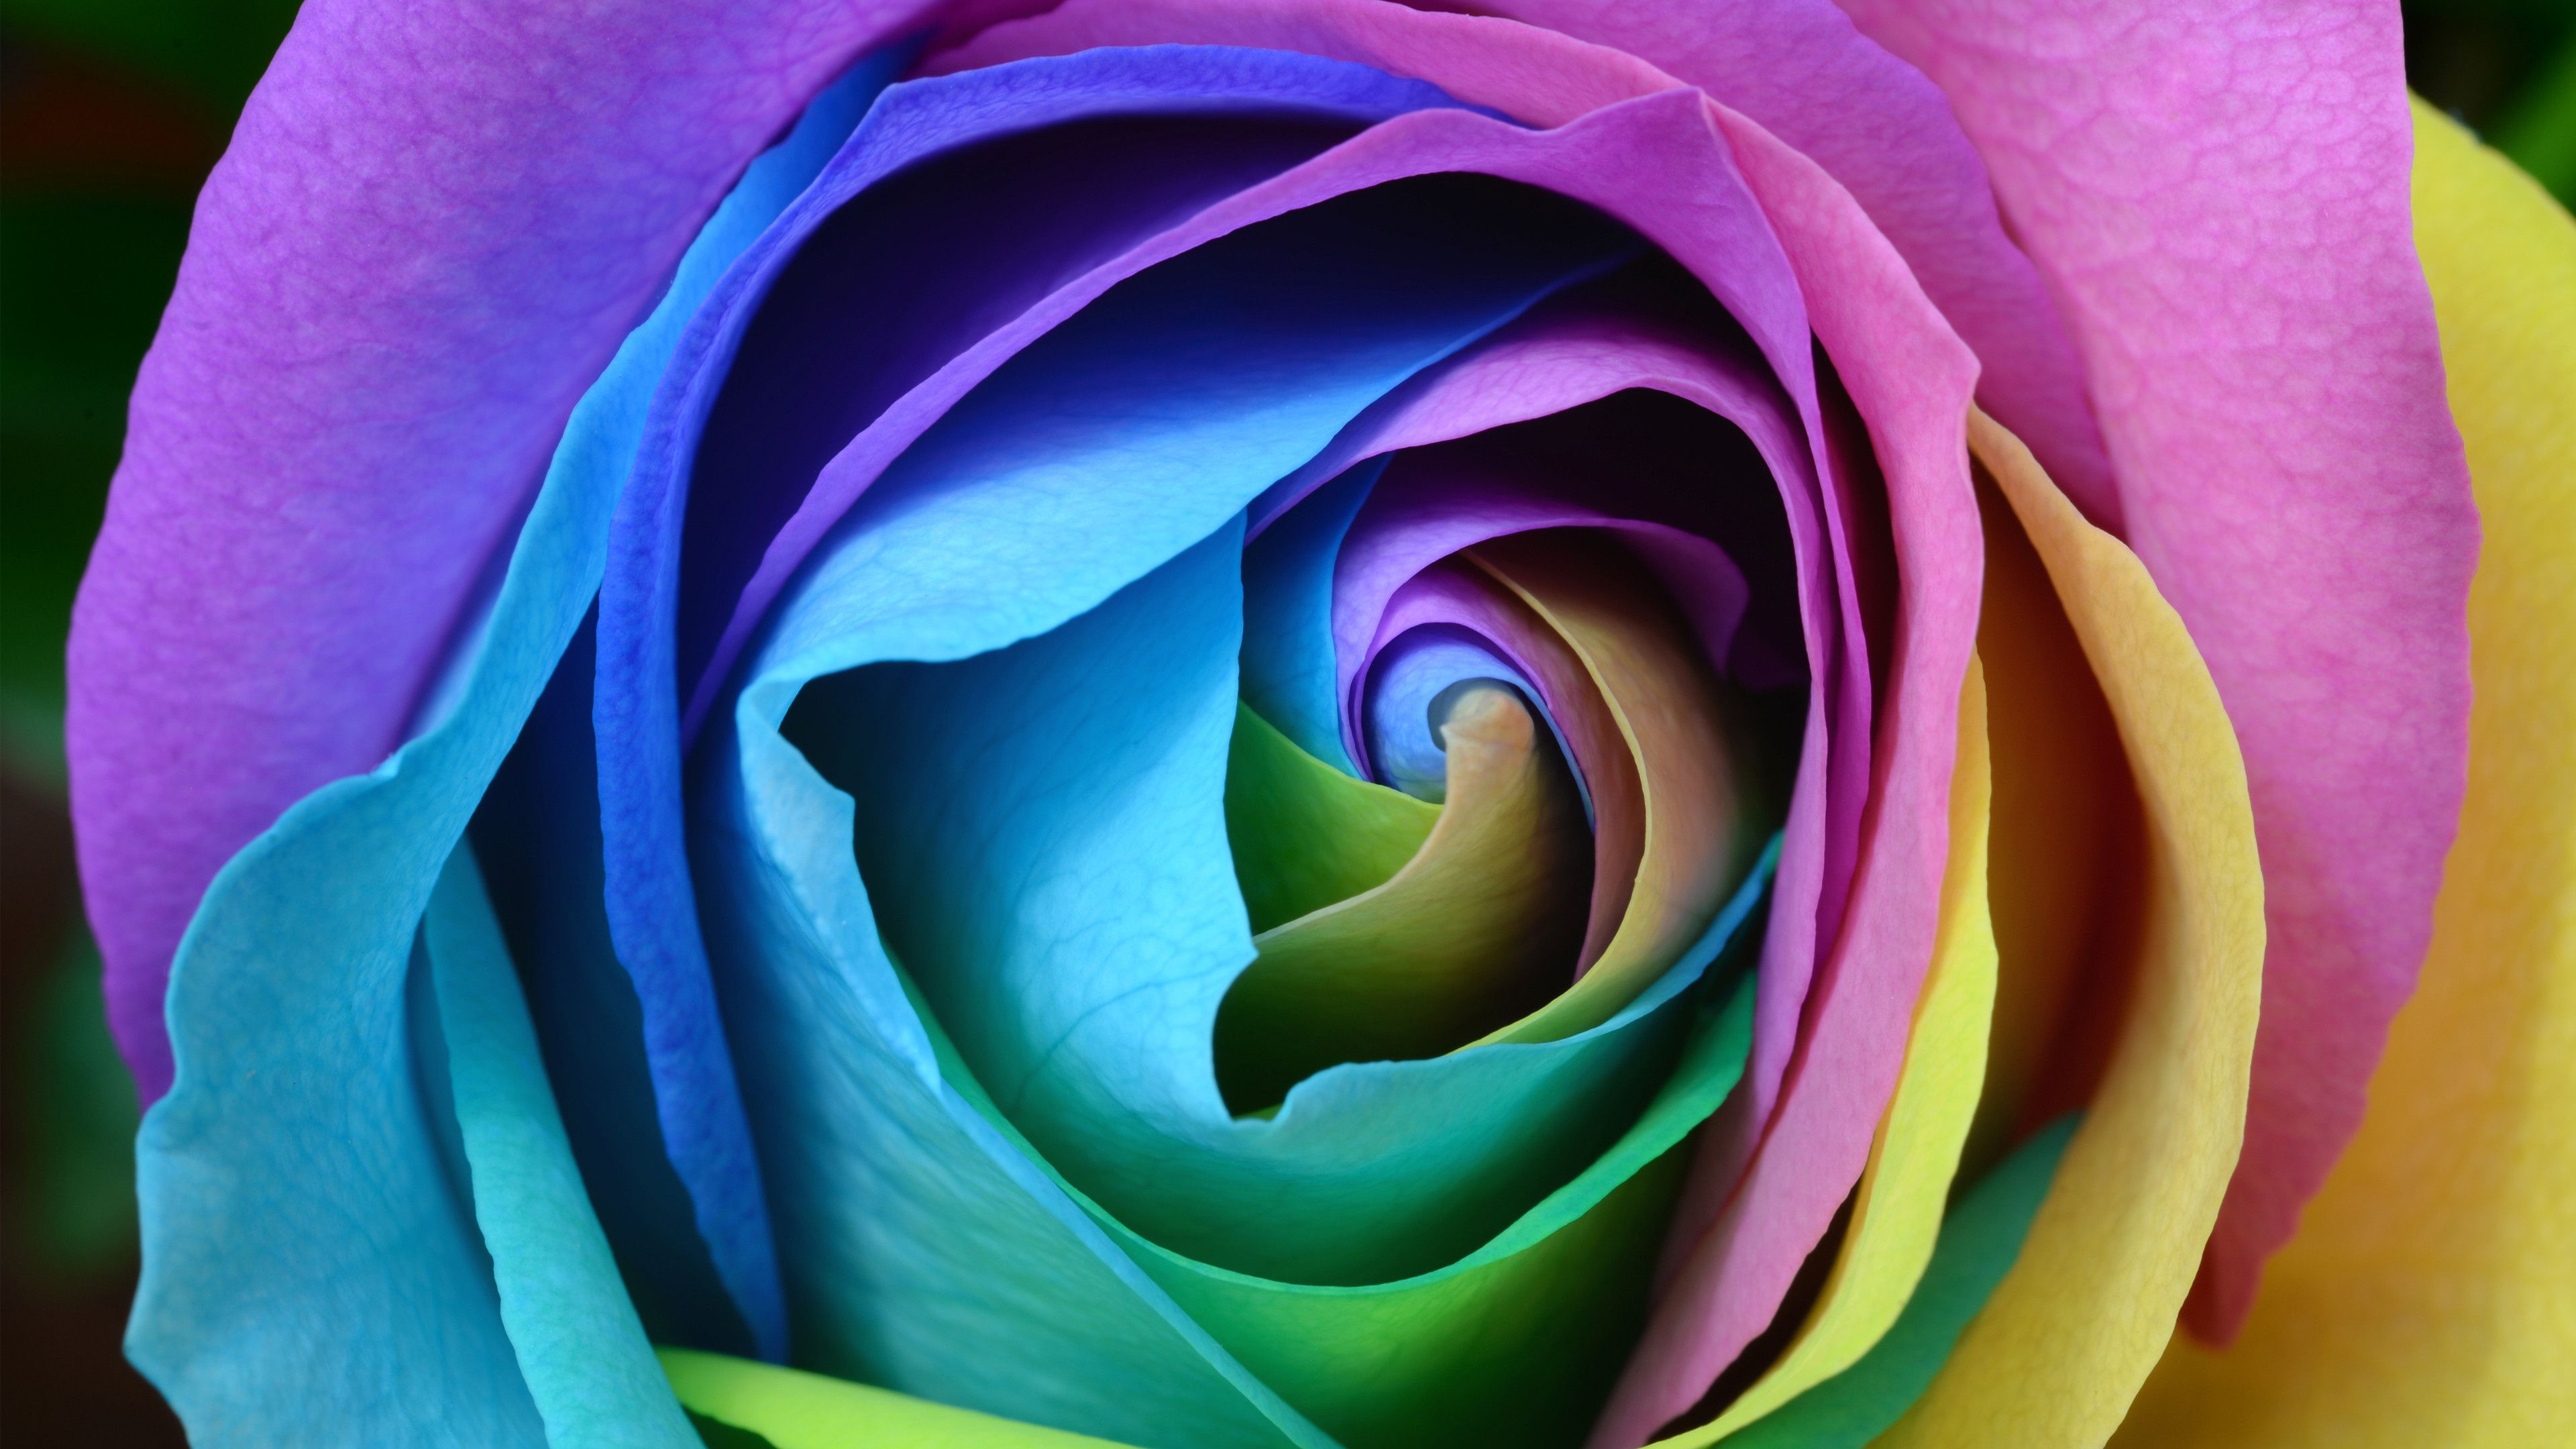 Desktop Wallpaper Colorful, Rose, Flower, Close Up, 4k, HD Image, Picture, Background, Af4b0d